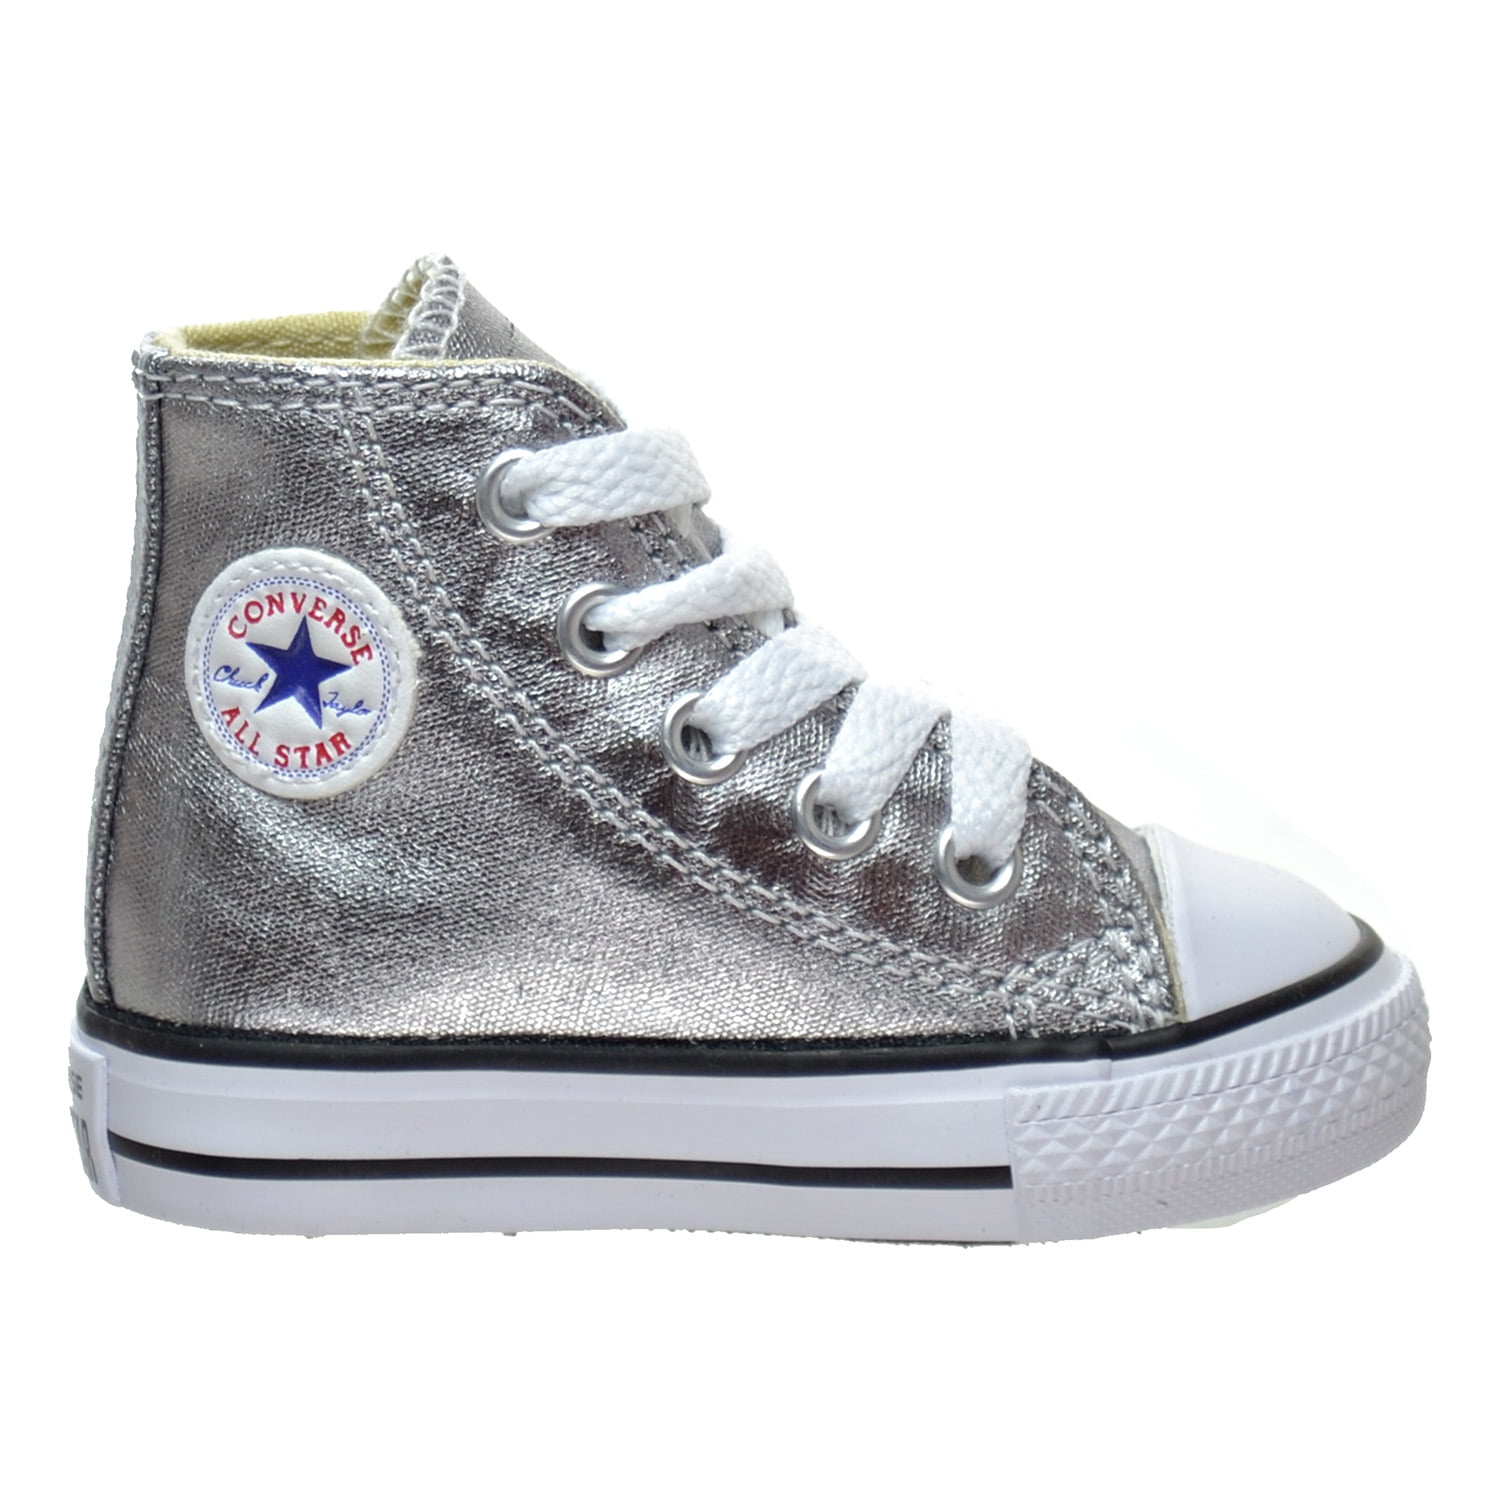 Encantador Sobrevivir promoción Converse Chuck Taylor All Star High top Toddler's Shoes Metallic Gunmetal  753177f - Walmart.com